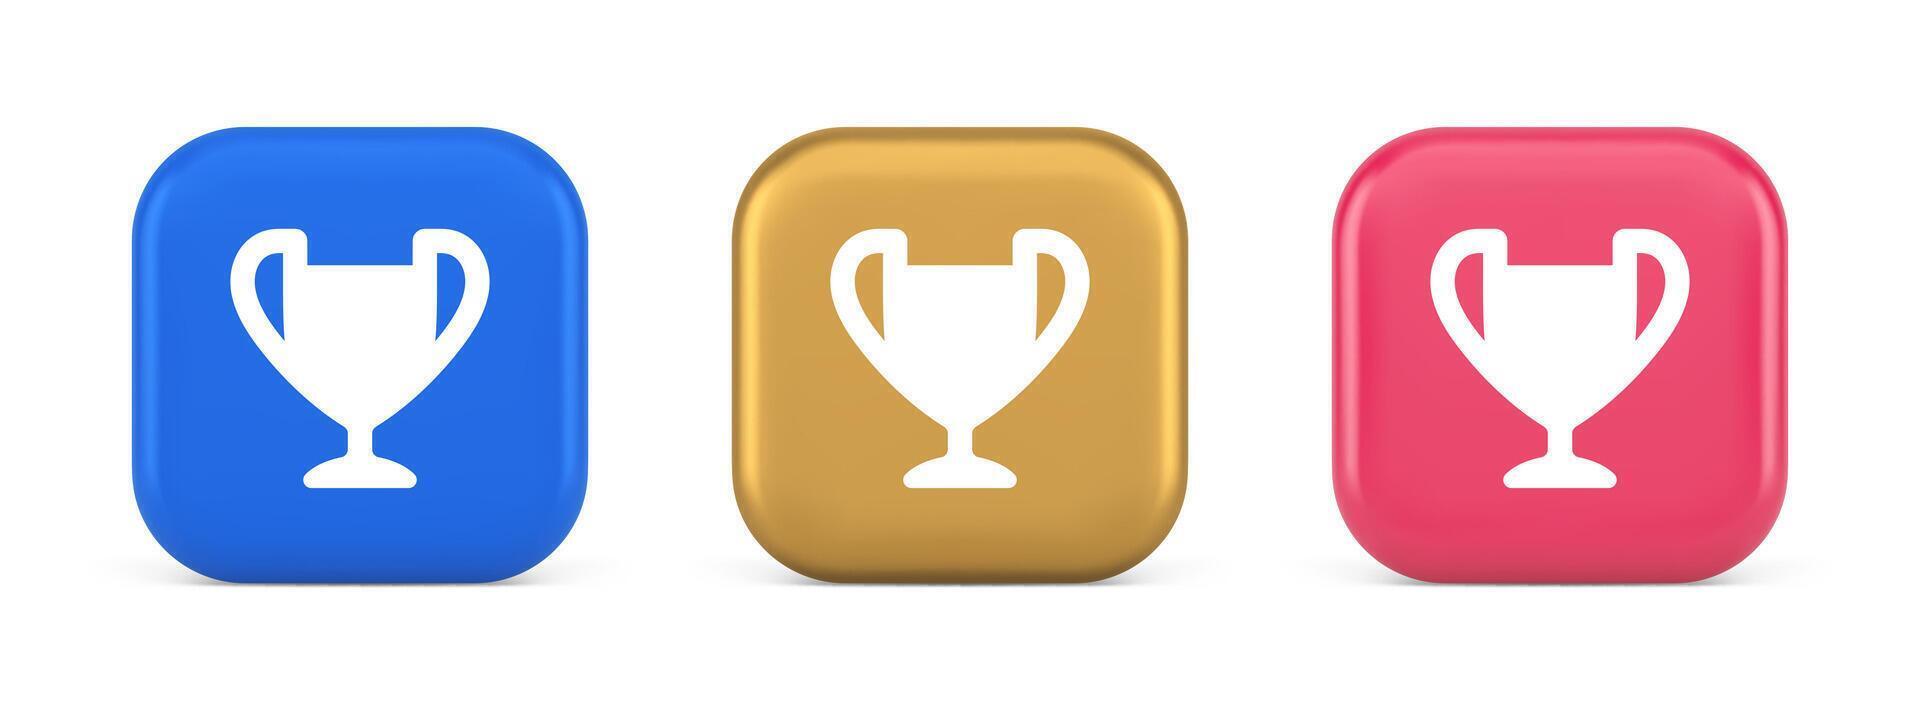 kop trofee prijs het beste winnen prestatie knop eerste plaats spel online verbinding 3d icoon vector